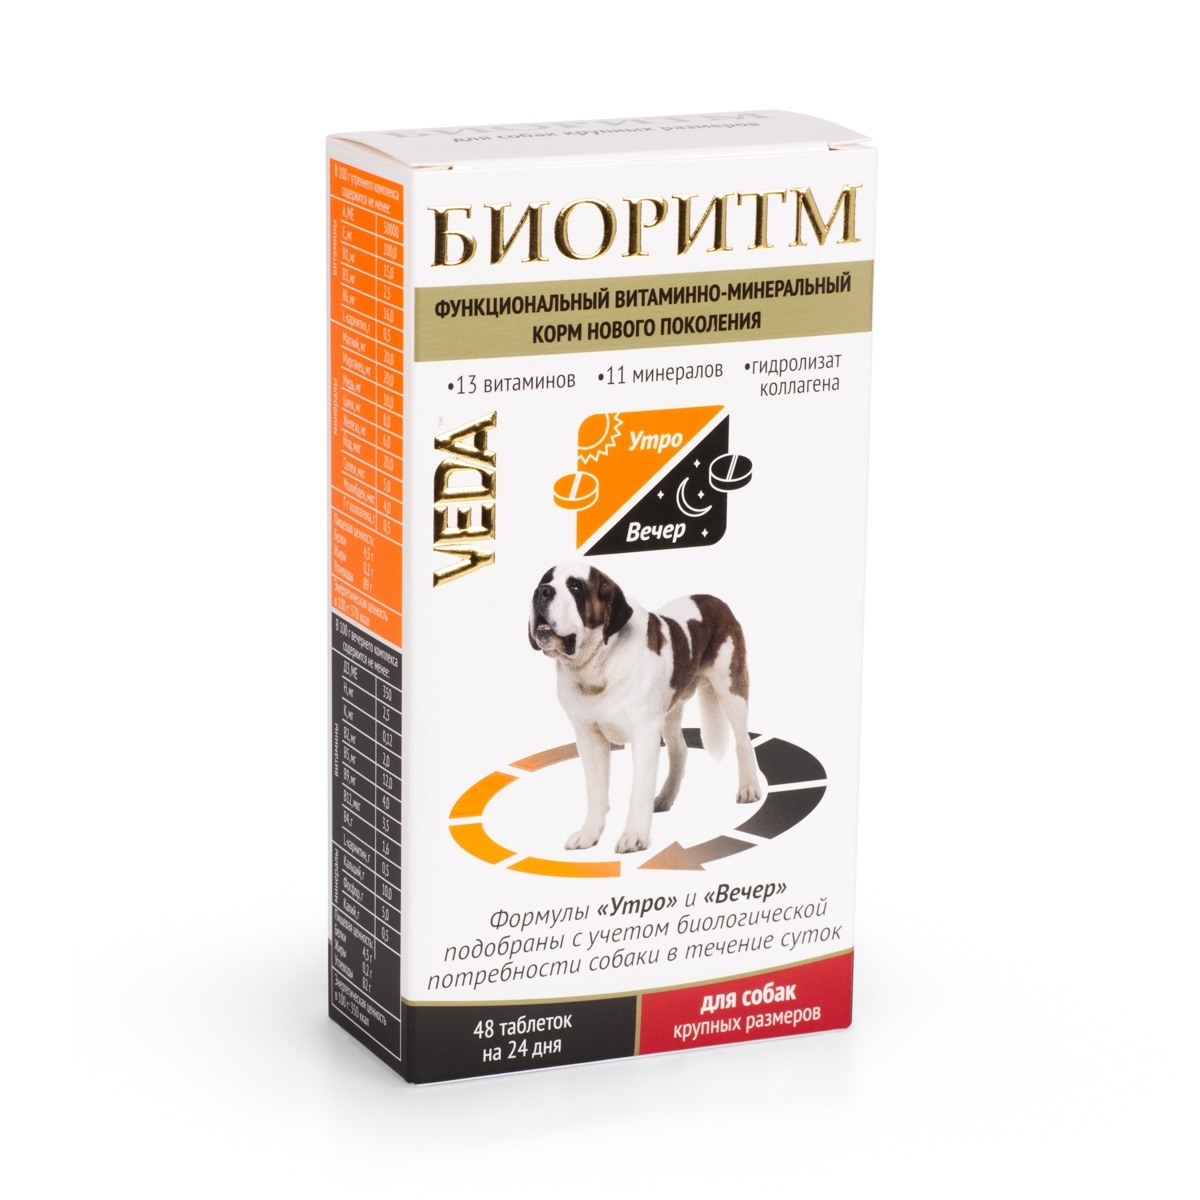 Веда Веда биоритм витамины для собак крупных пород (20 г) веда веда шоколад молочный с воздушным рисом для собак 15 г